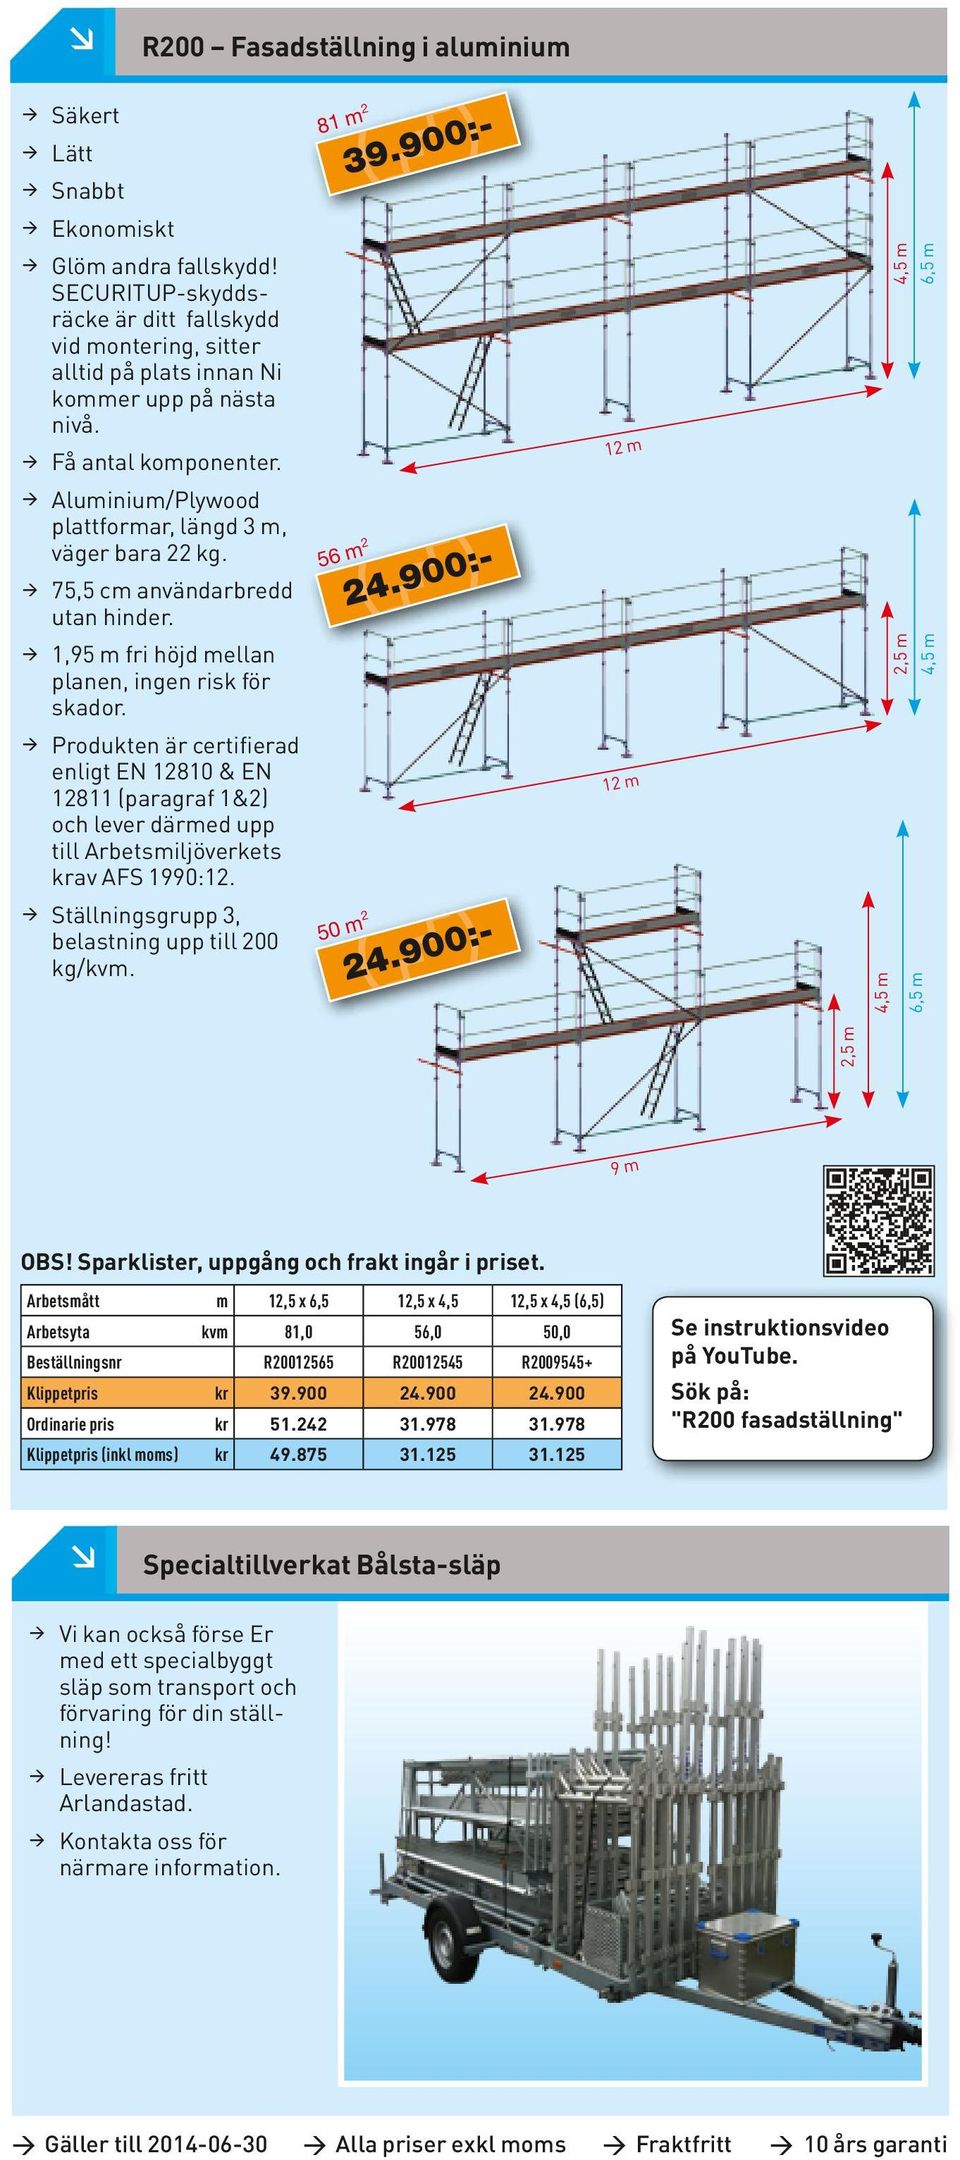 12 m 4,5 m 6,5 m Aluminium/Plywood plattformar, längd 3 m, väger bara 22 kg. 75,5 cm användarbredd utan hinder. 56 m 2 24.900:- 1,95 m fri höjd mellan planen, ingen risk för skador.